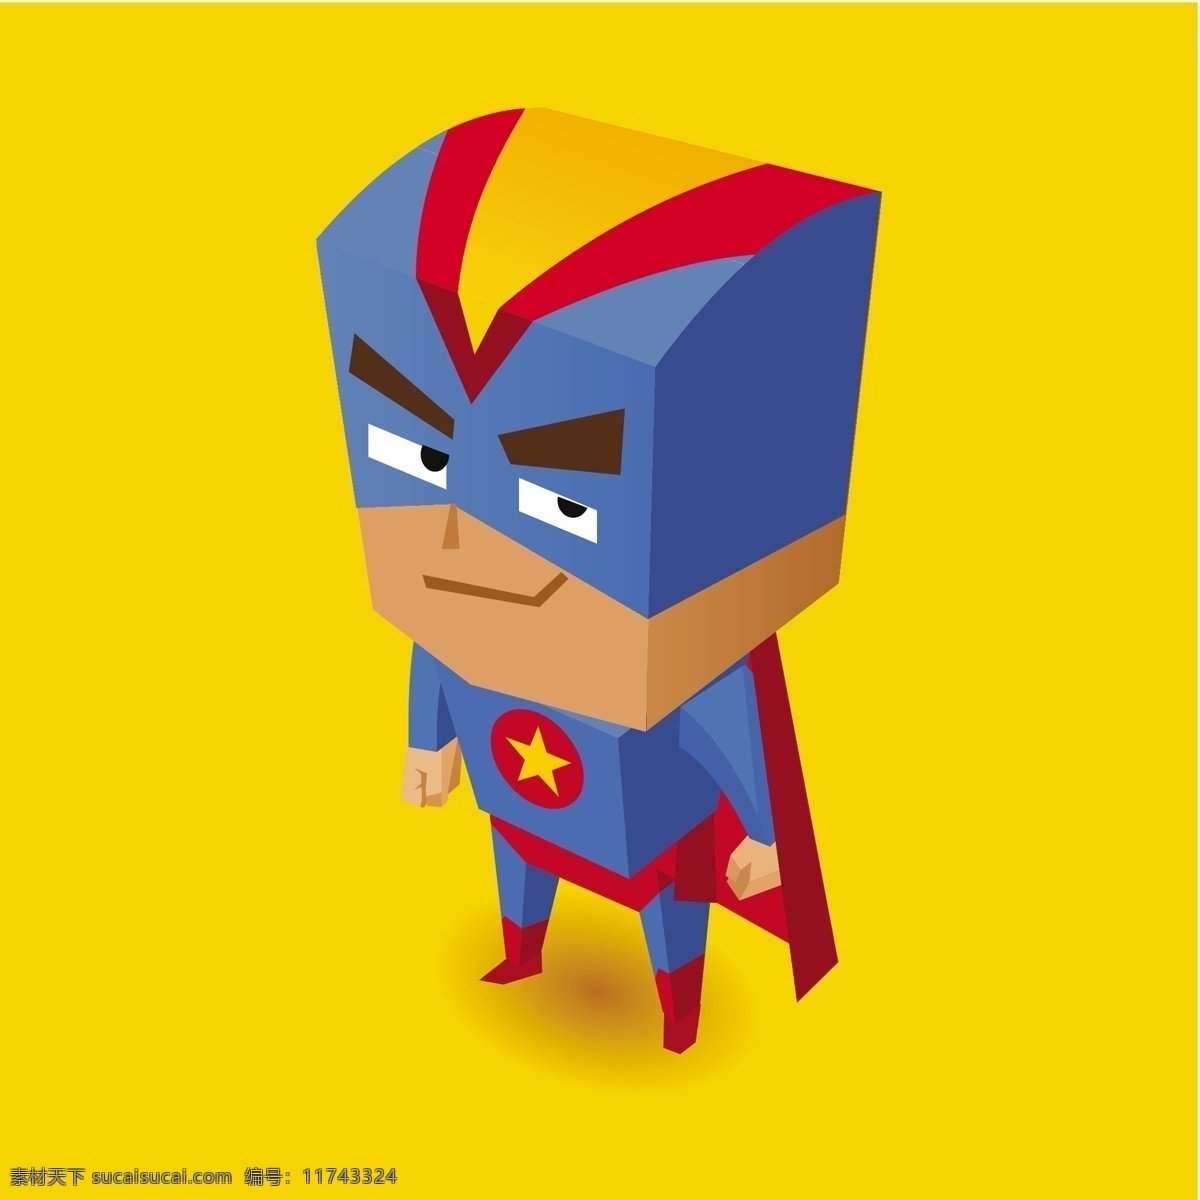 蓝色 超级 英雄 插画 矢量 字符 图标 蓝色人物 服装 英雄人物 明星 超级英雄 超级英雄服装 孩子